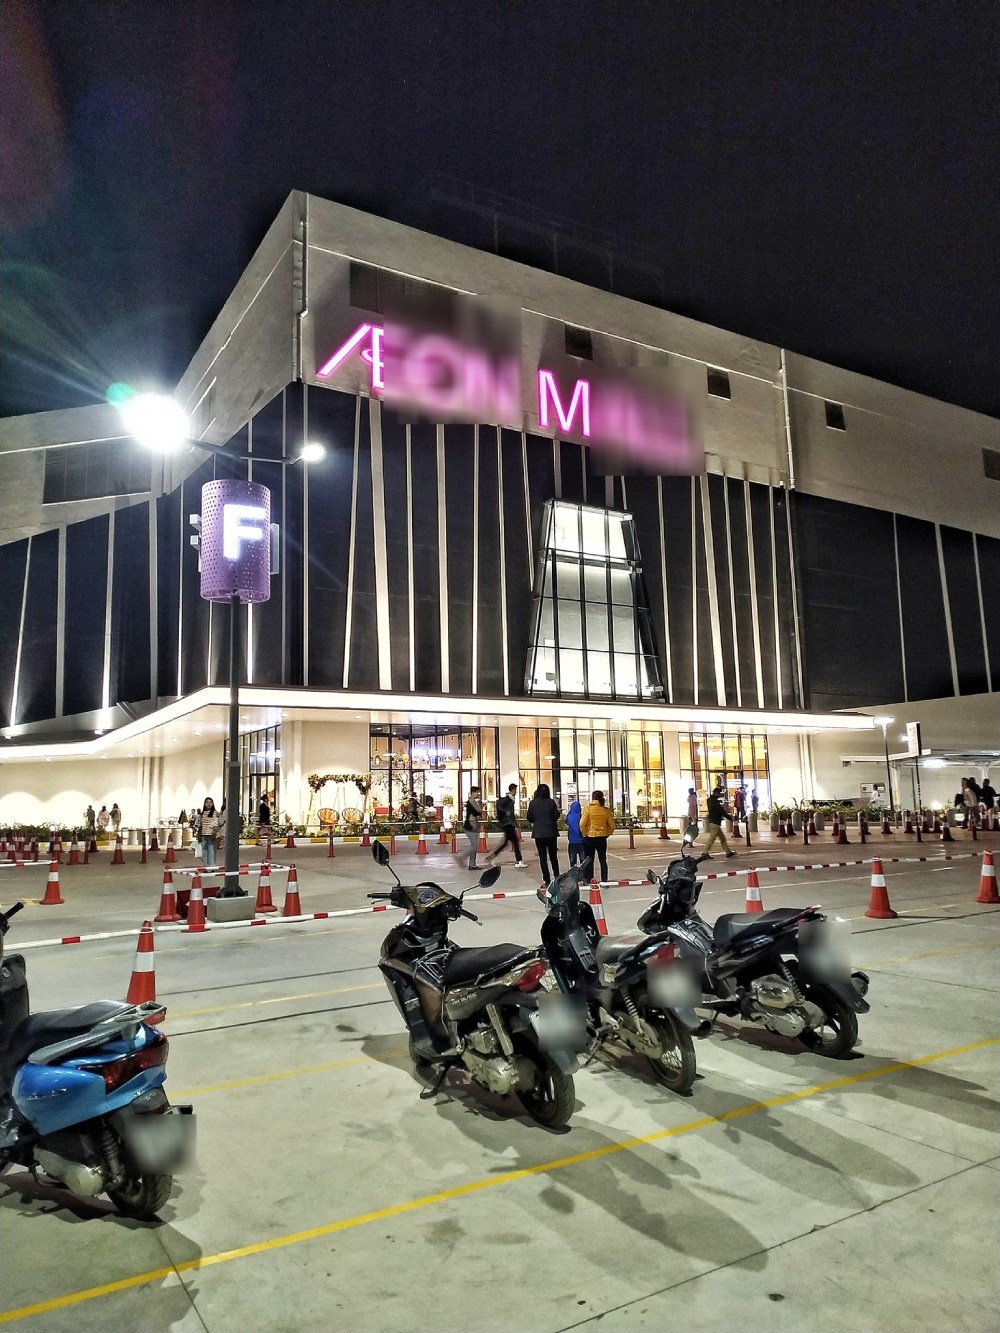  
A.M. là một chuỗi siêu thị lớn, có rất nhiều khách ghé đến. (Ảnh: FB A.M.)